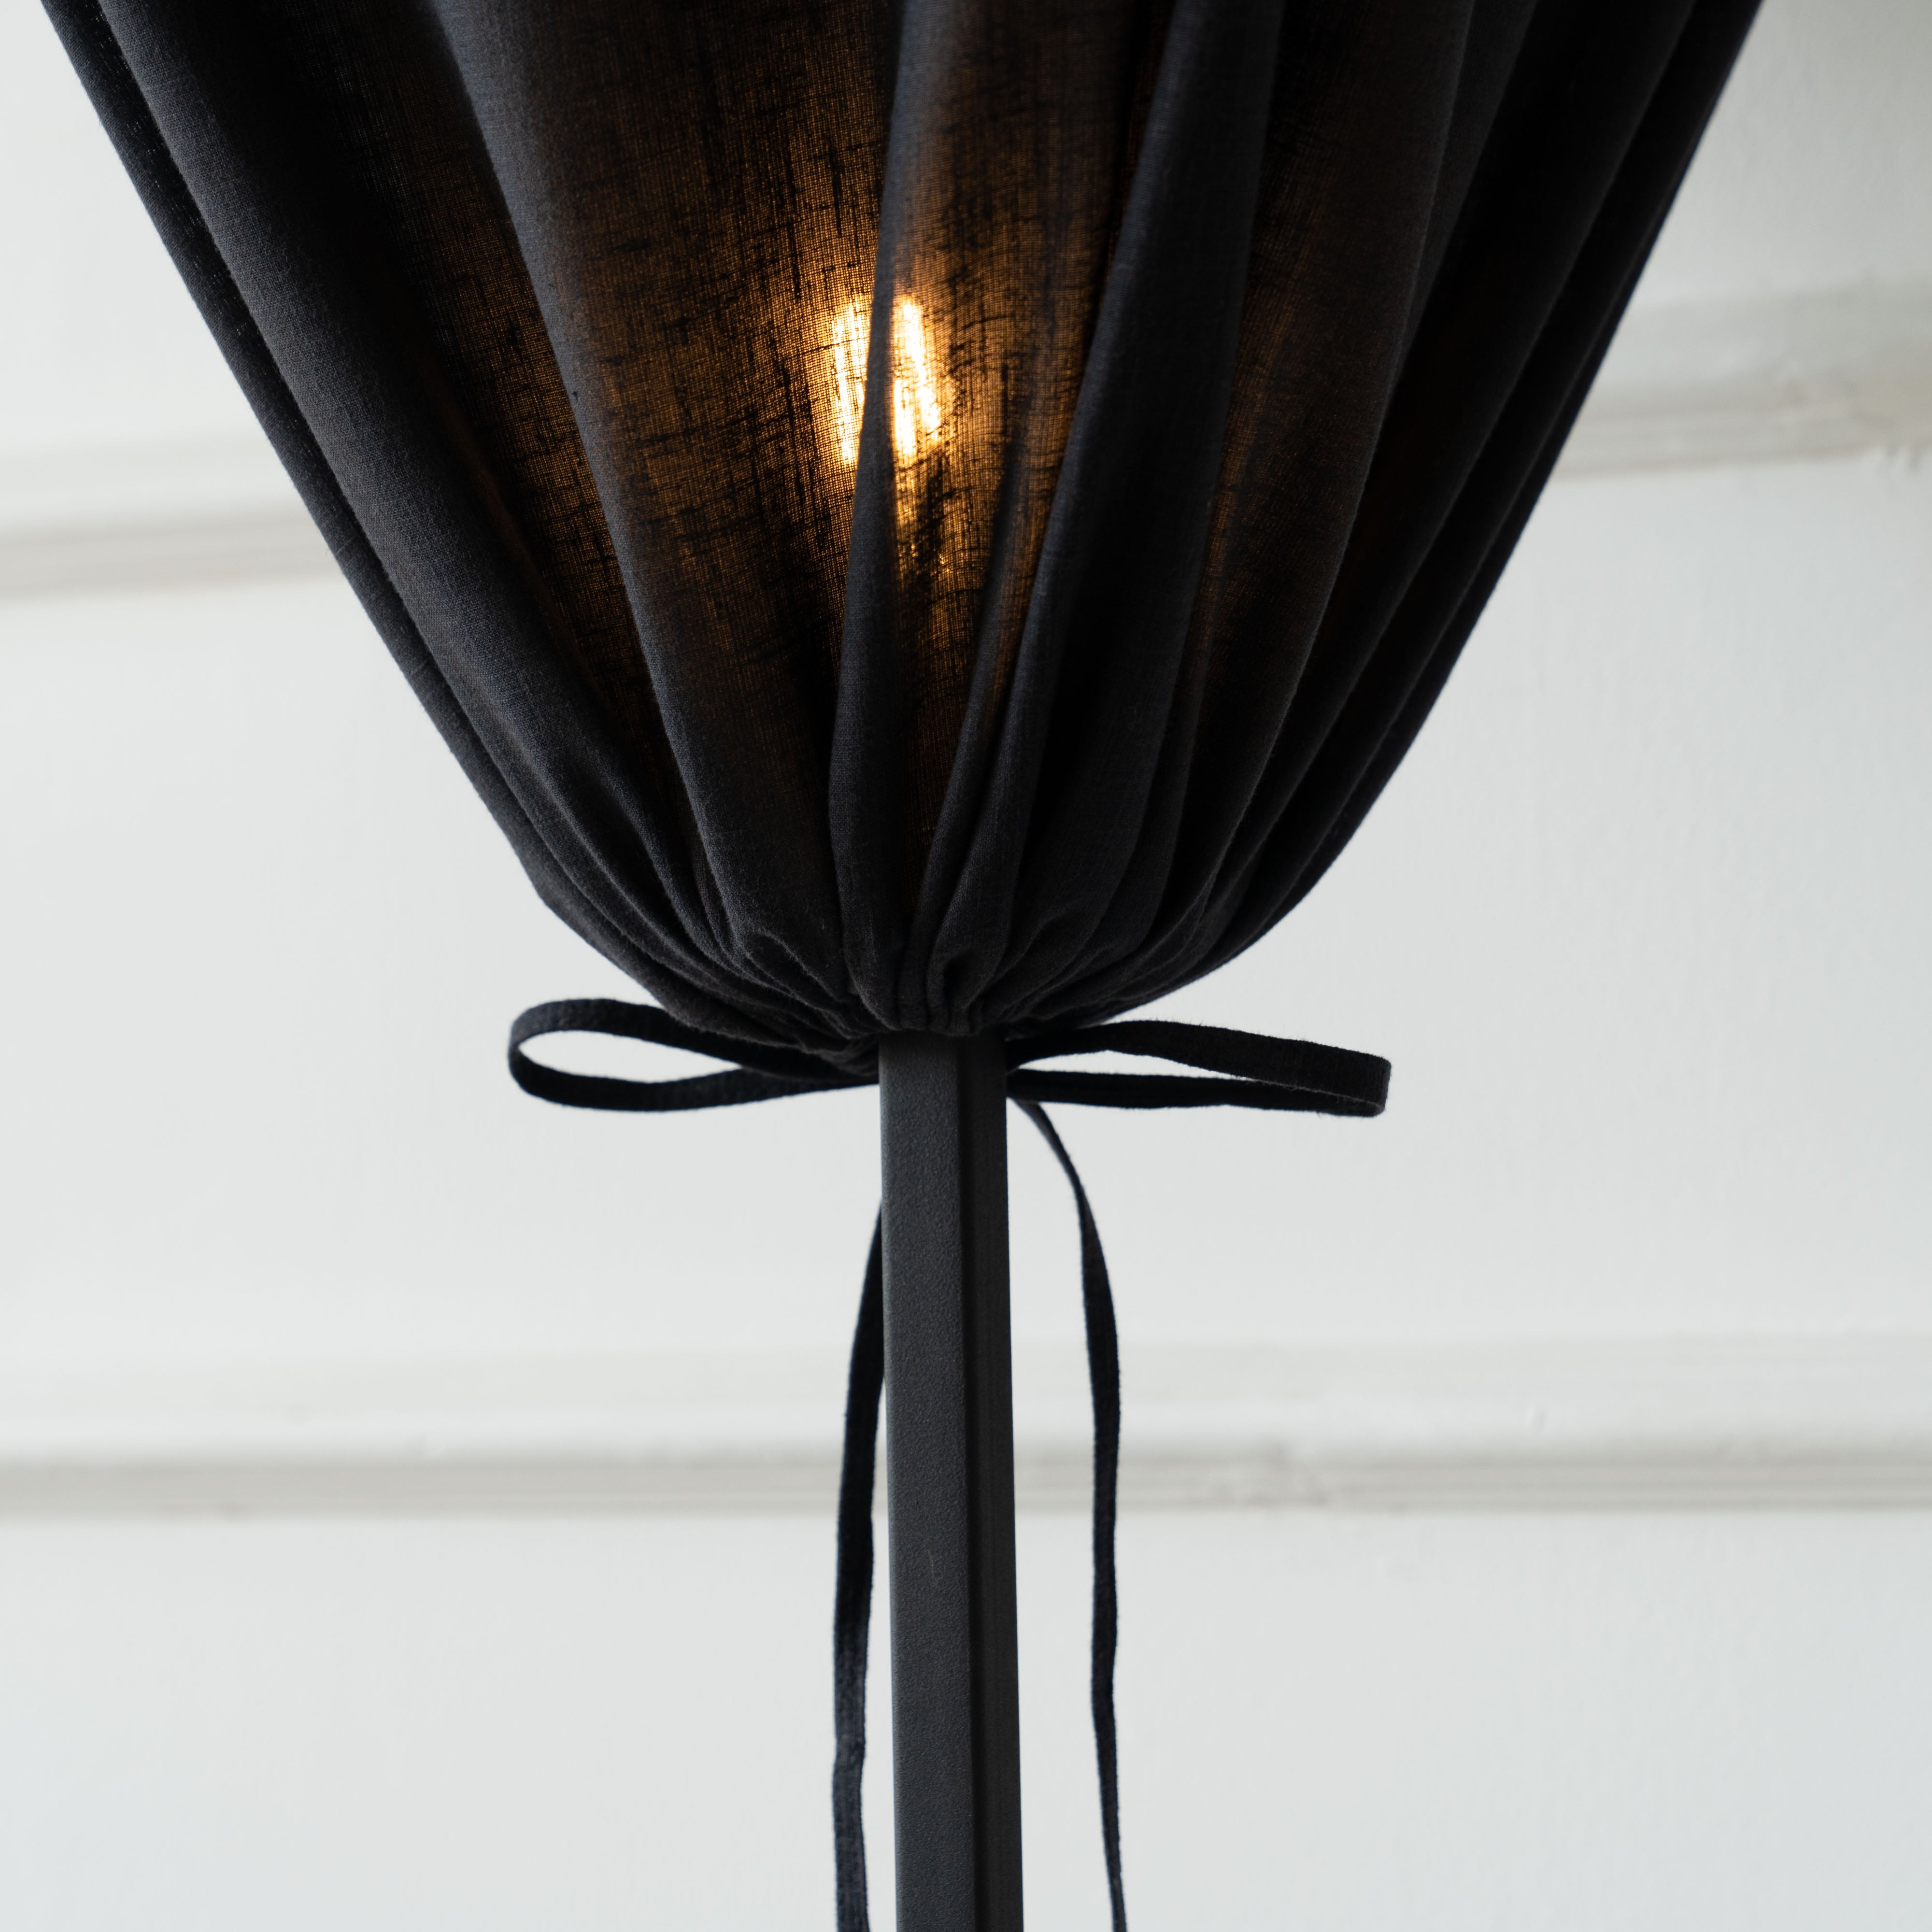 Bellona Lamp  - WS Living - UAE - Floor Lamp Wood and steel Furnitures - Dubai